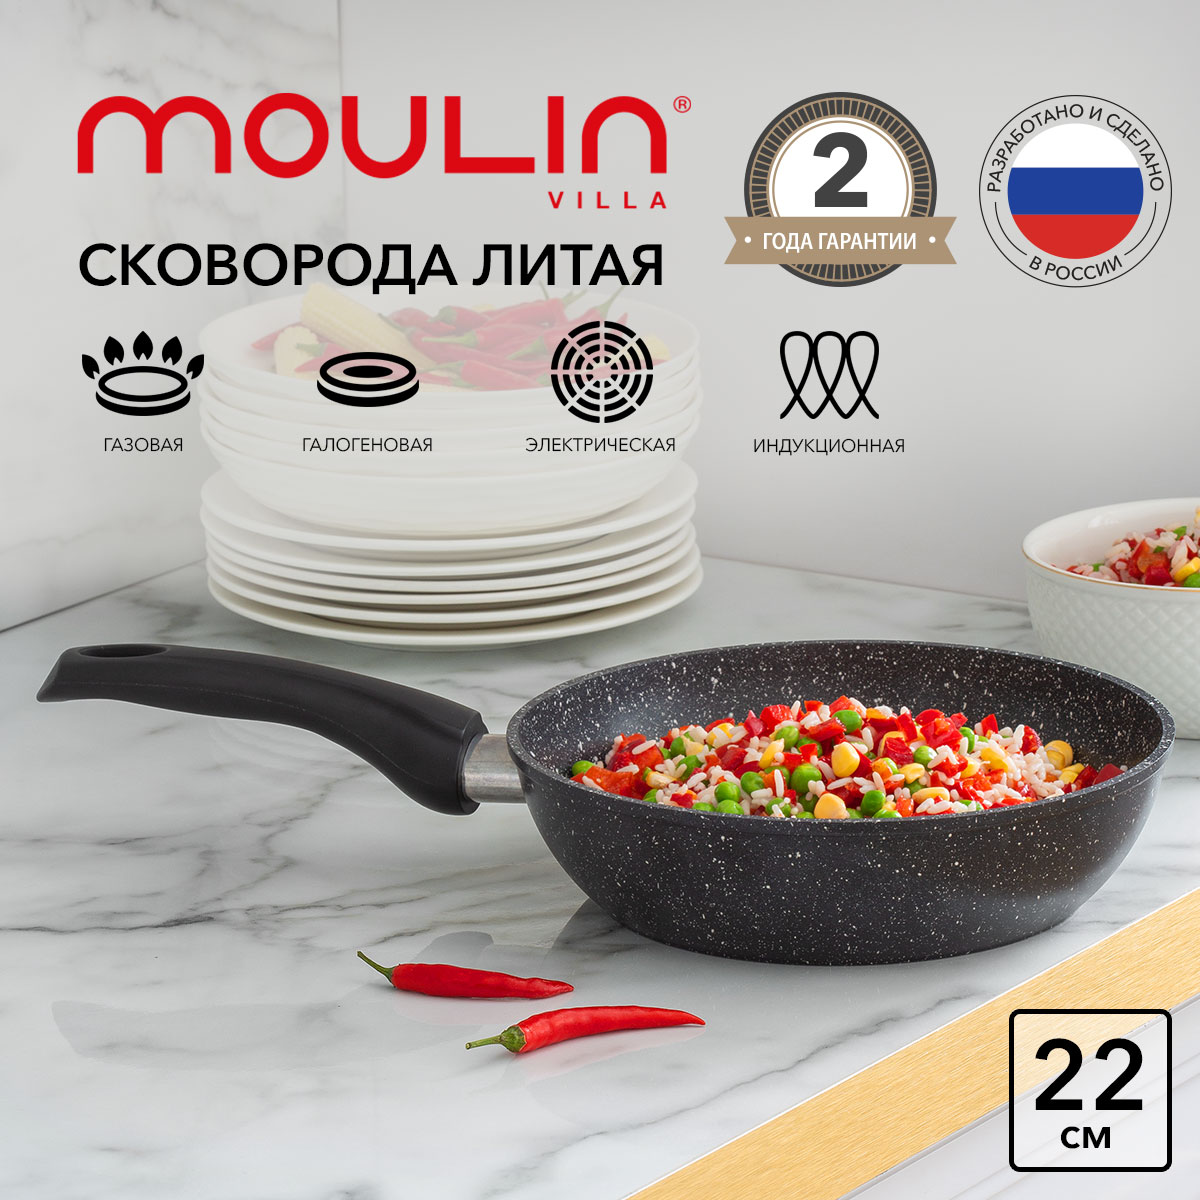 Сковорода антипригарная Moulin Villa Impression TM-22-DI индукция 22 см - купить в Moulin Villa Home (со склада МегаМаркет), цена на Мегамаркет